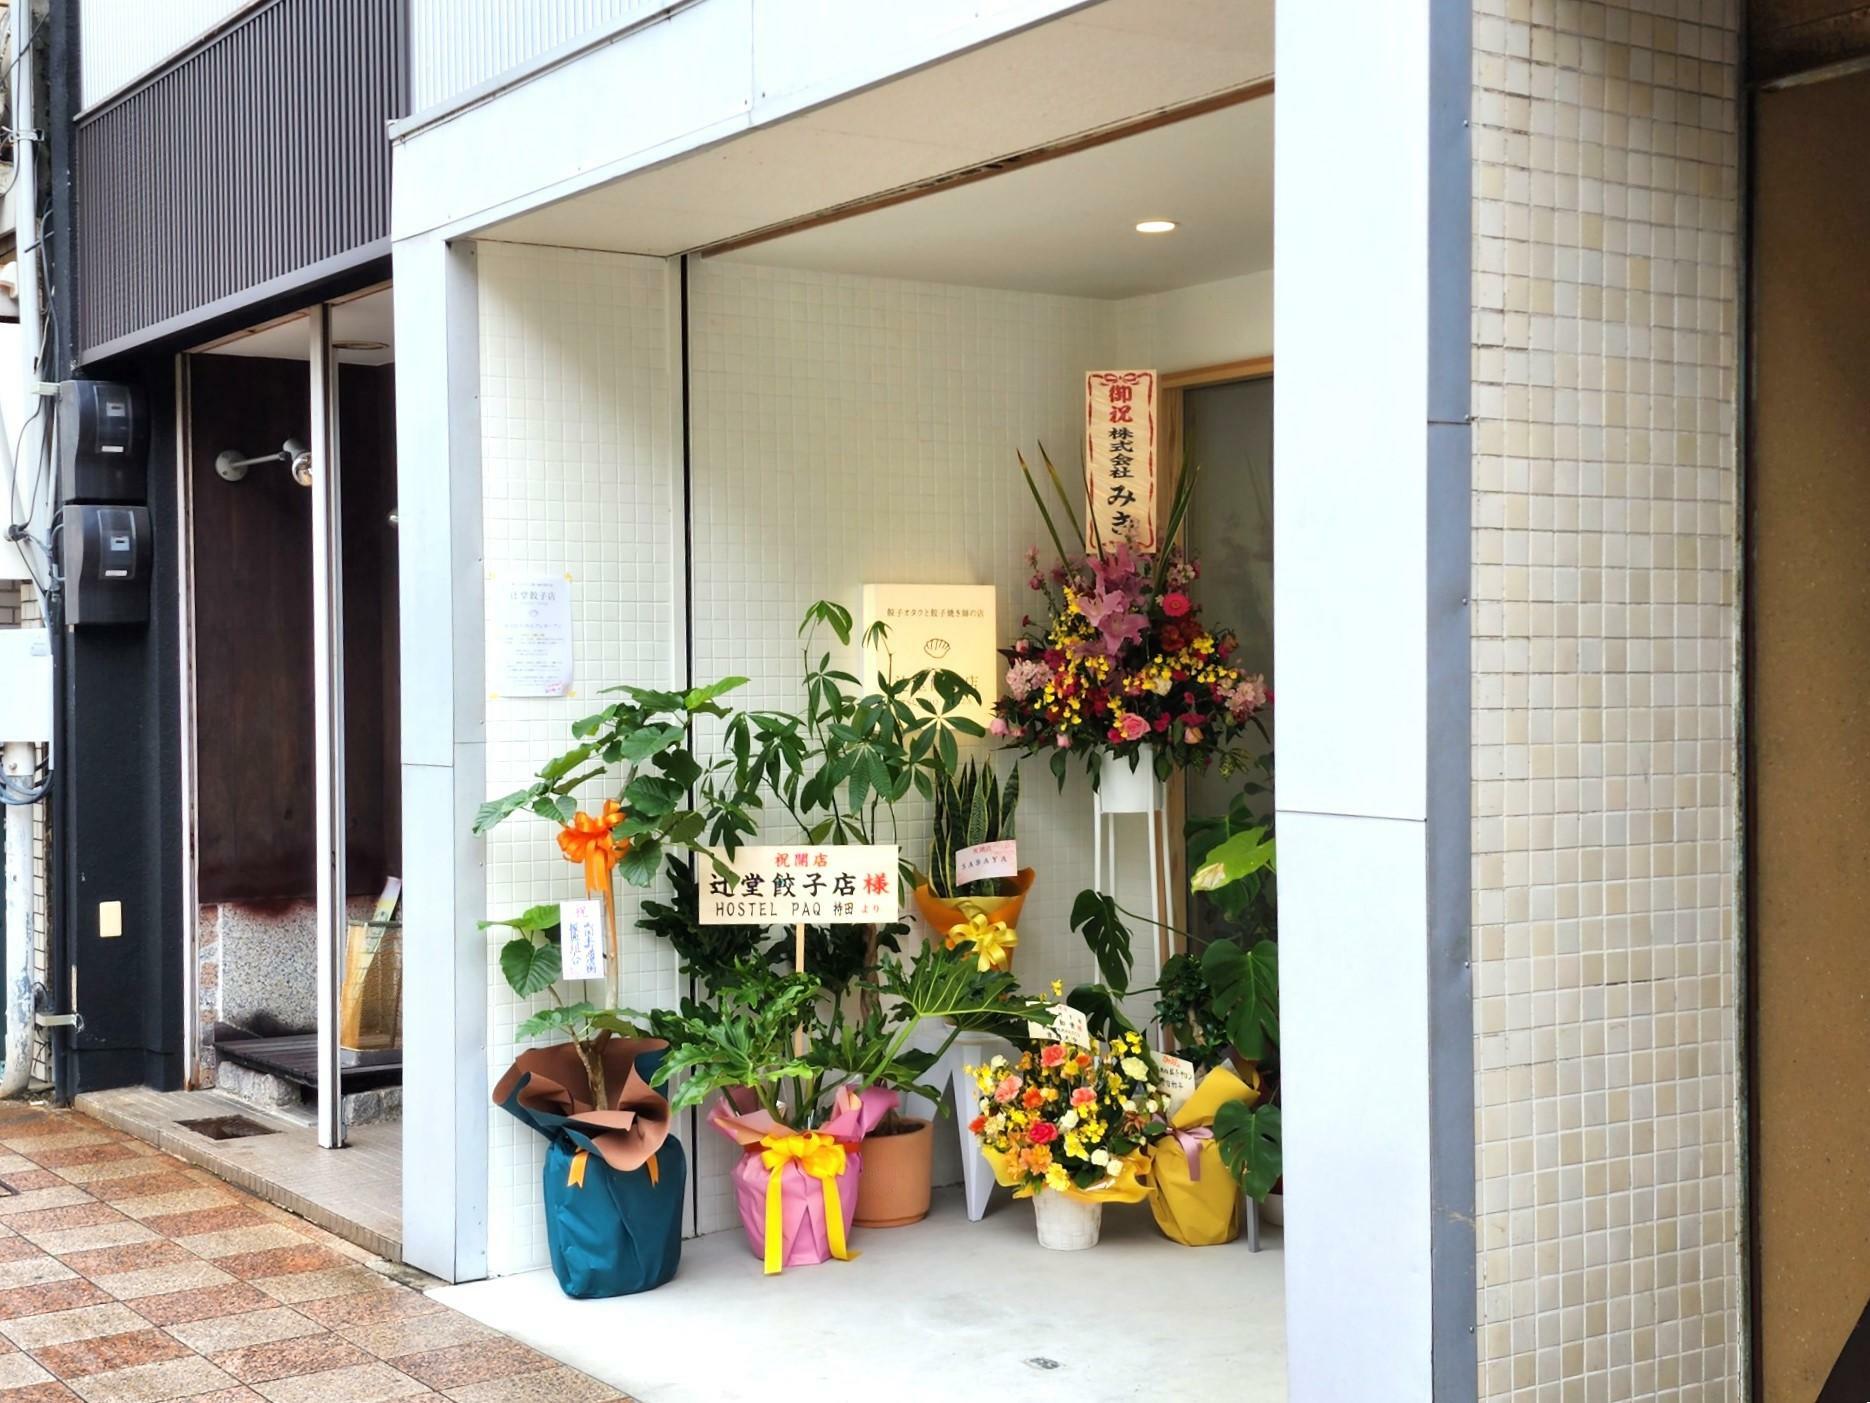 餃子オタクと餃子焼き師の店「辻堂餃子店」店舗外観。